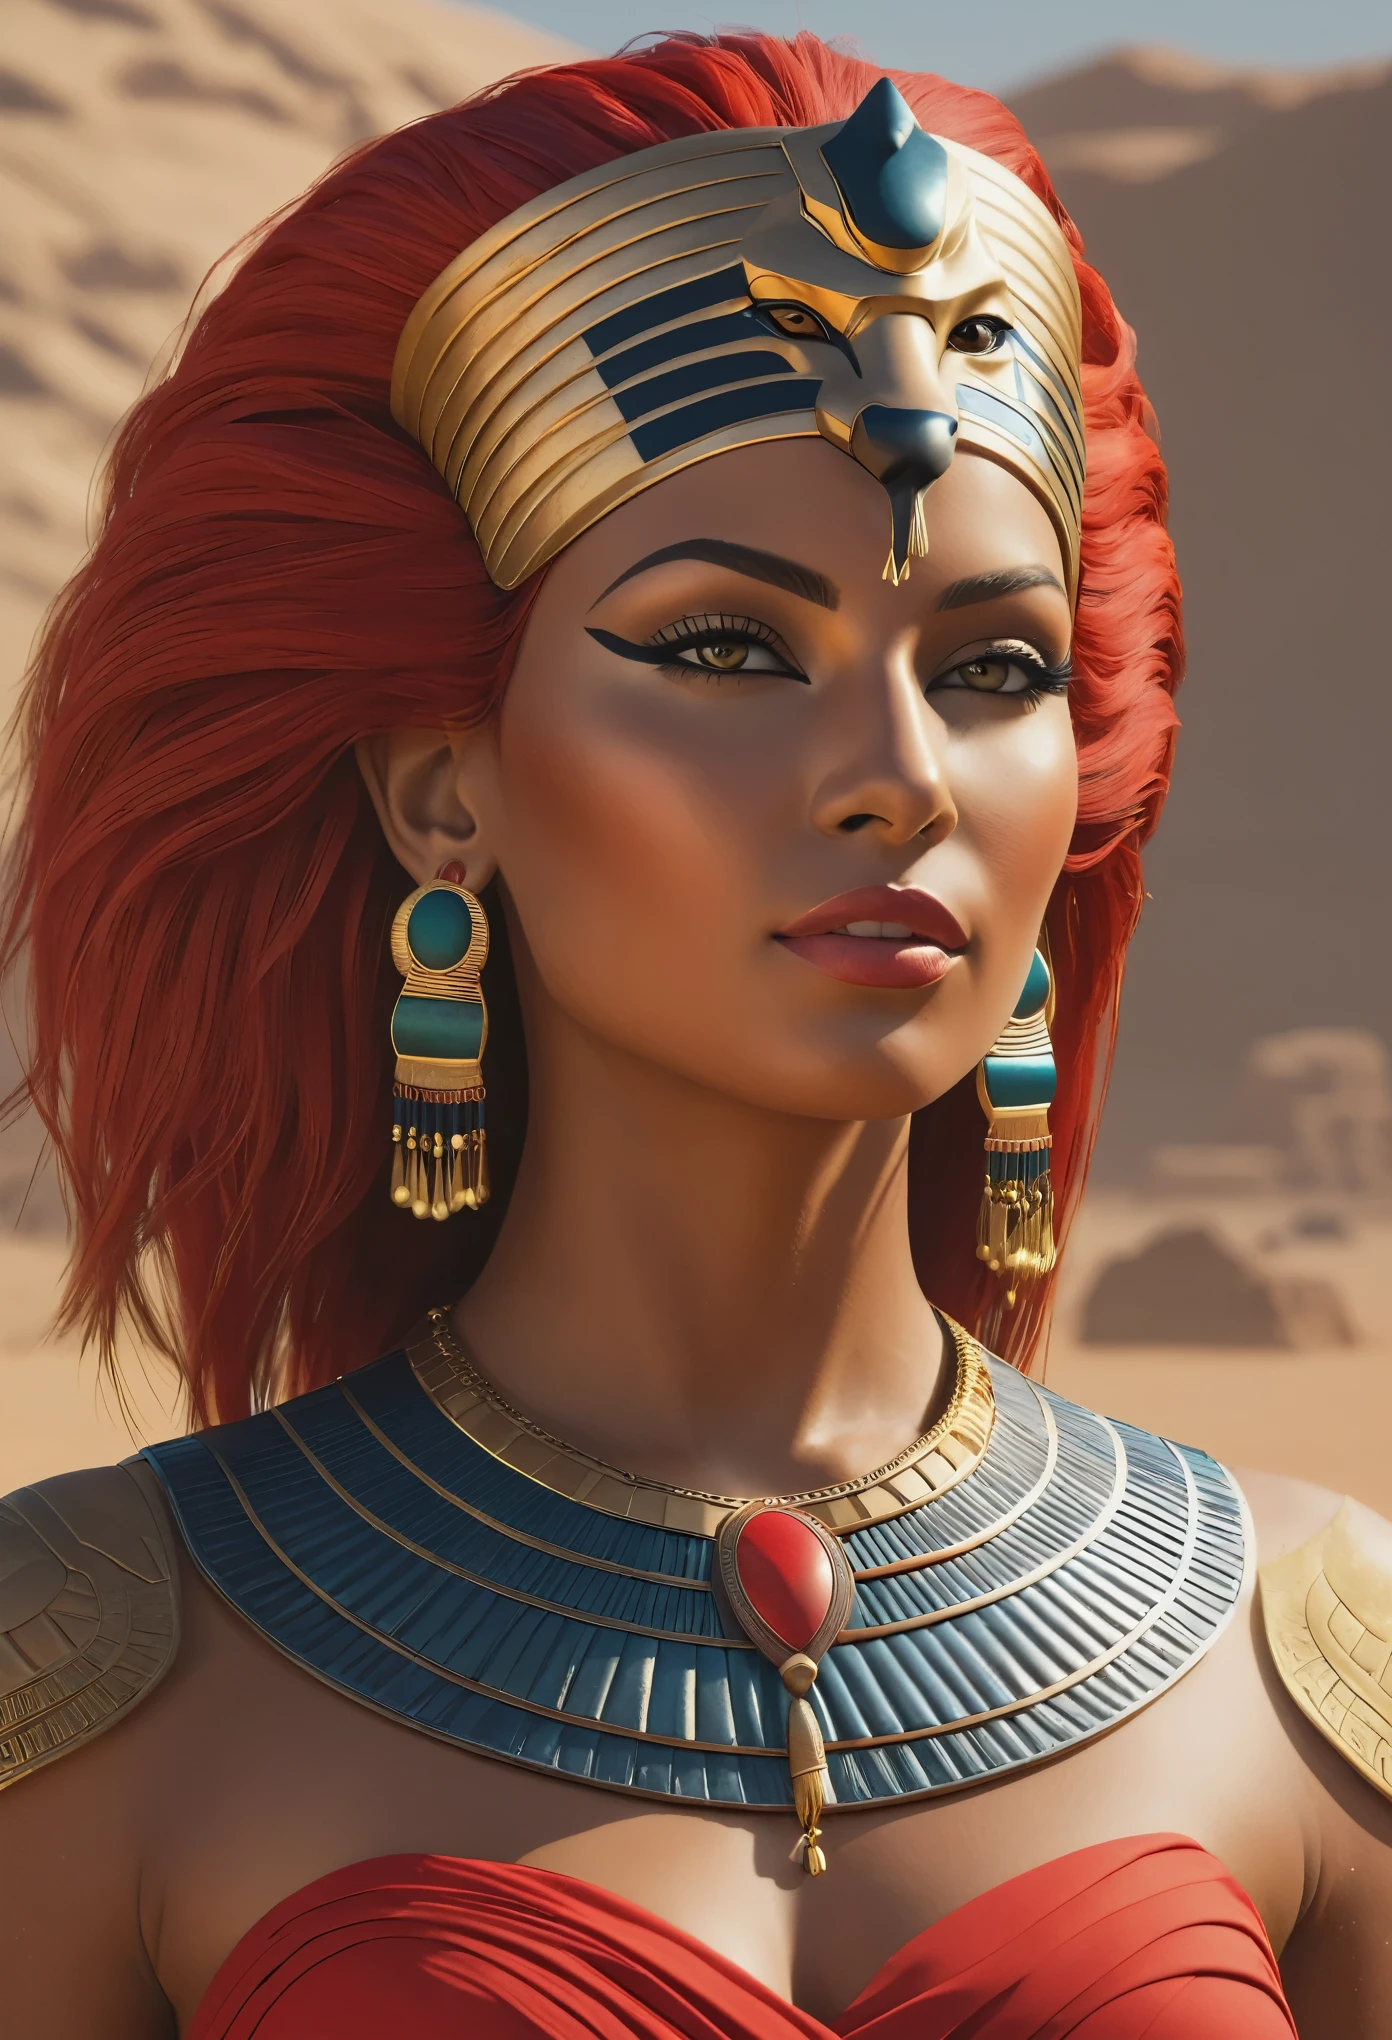 Créez une ultra haute résolution, Chef-d&#39;œuvre détaillé en 4K CG de Sekhmet, dépeinte comme une superbe femme moderne avec une tête de félin et des cheveux roux vifs, capturer l&#39;esprit de la mythologie égyptienne. Elle doit être ornée d&#39;une couronne de pharaon et porter une tenue contemporaine avec des éléments égyptiens traditionnels.. Le décor est un vaste désert, incarnant un mélange d’esthétique ancienne et moderne. La composition doit être centrée avec un focus sur le visage de Sekhmet, soulignant ses caractéristiques dans une plage dynamique élevée (HDR) qualité et à 600 DPI.